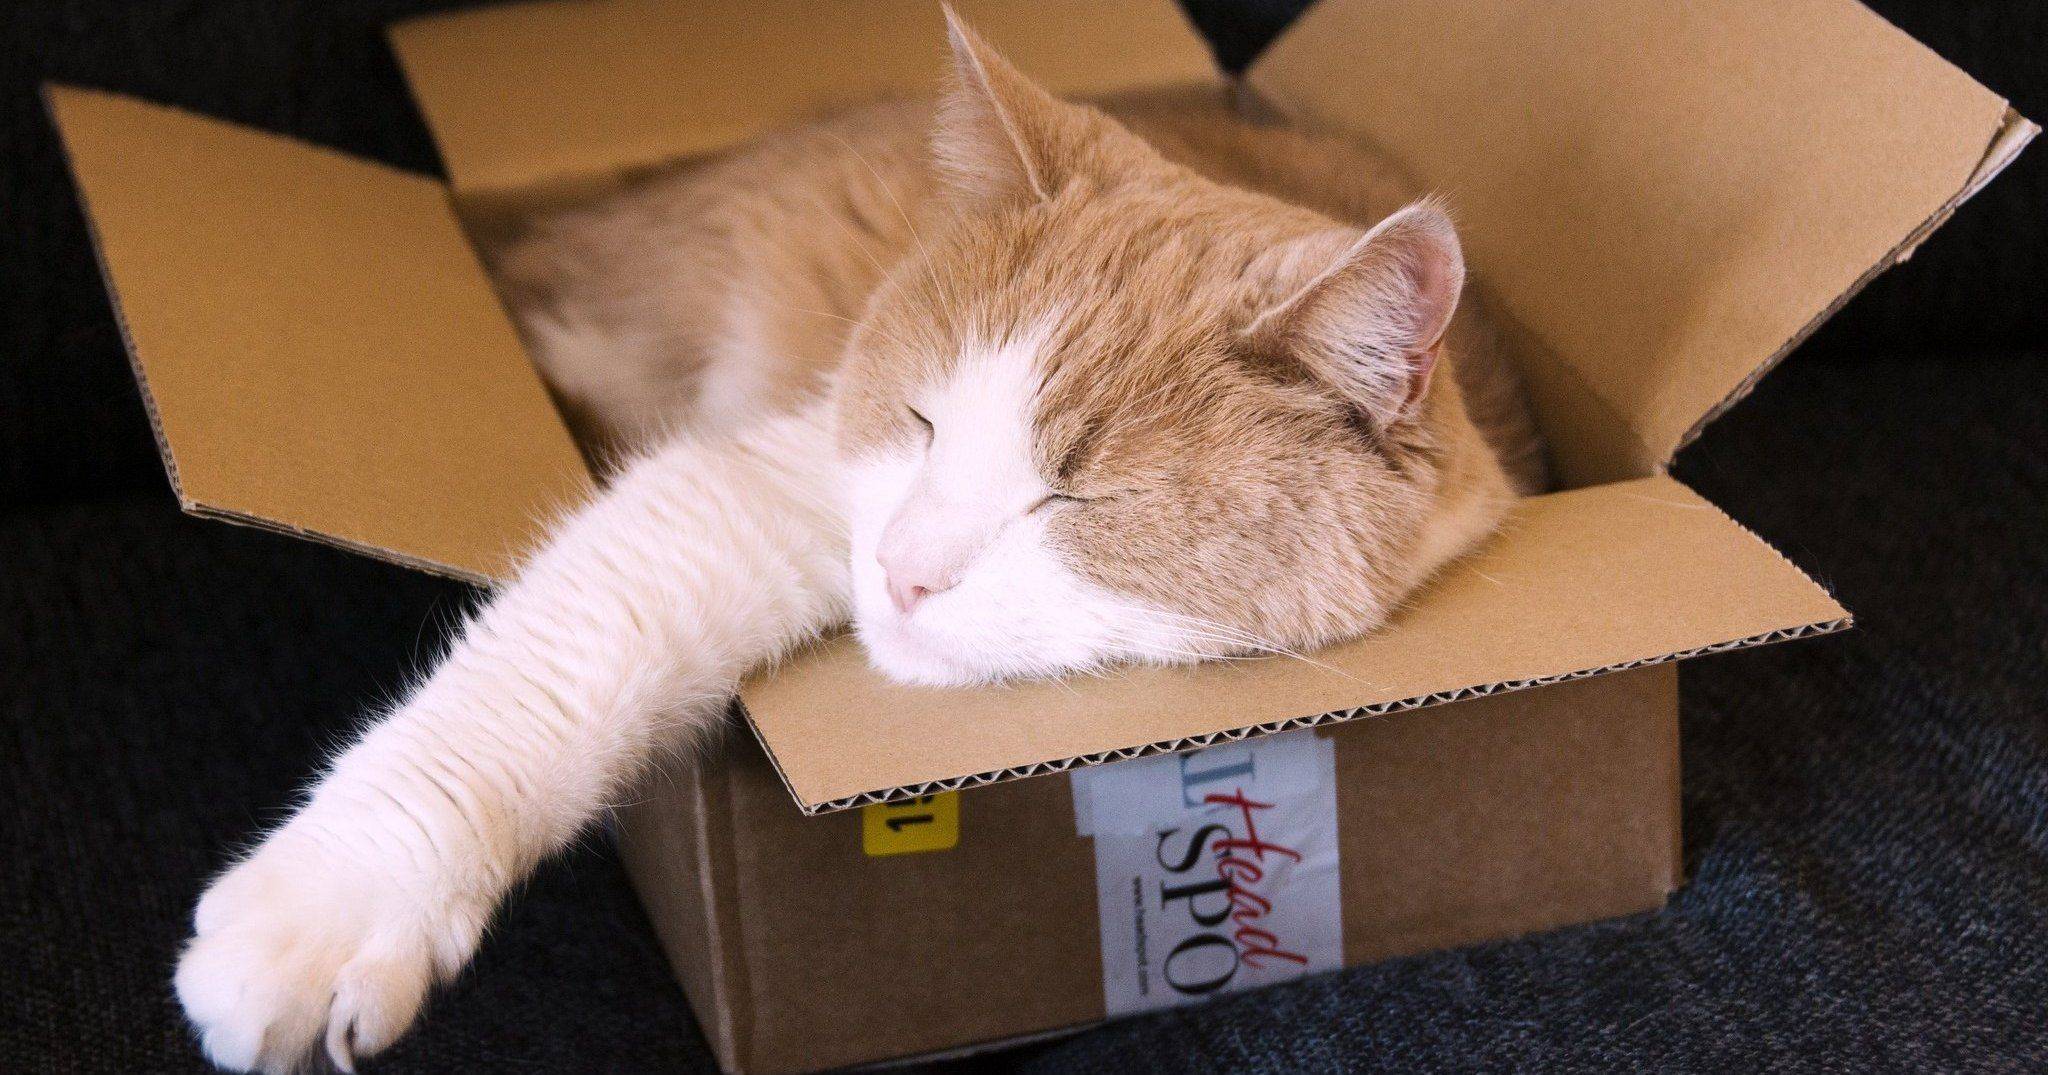 Почему кошки любят коробки и пакеты, из-за чего котам нравится в них сидеть и спать?